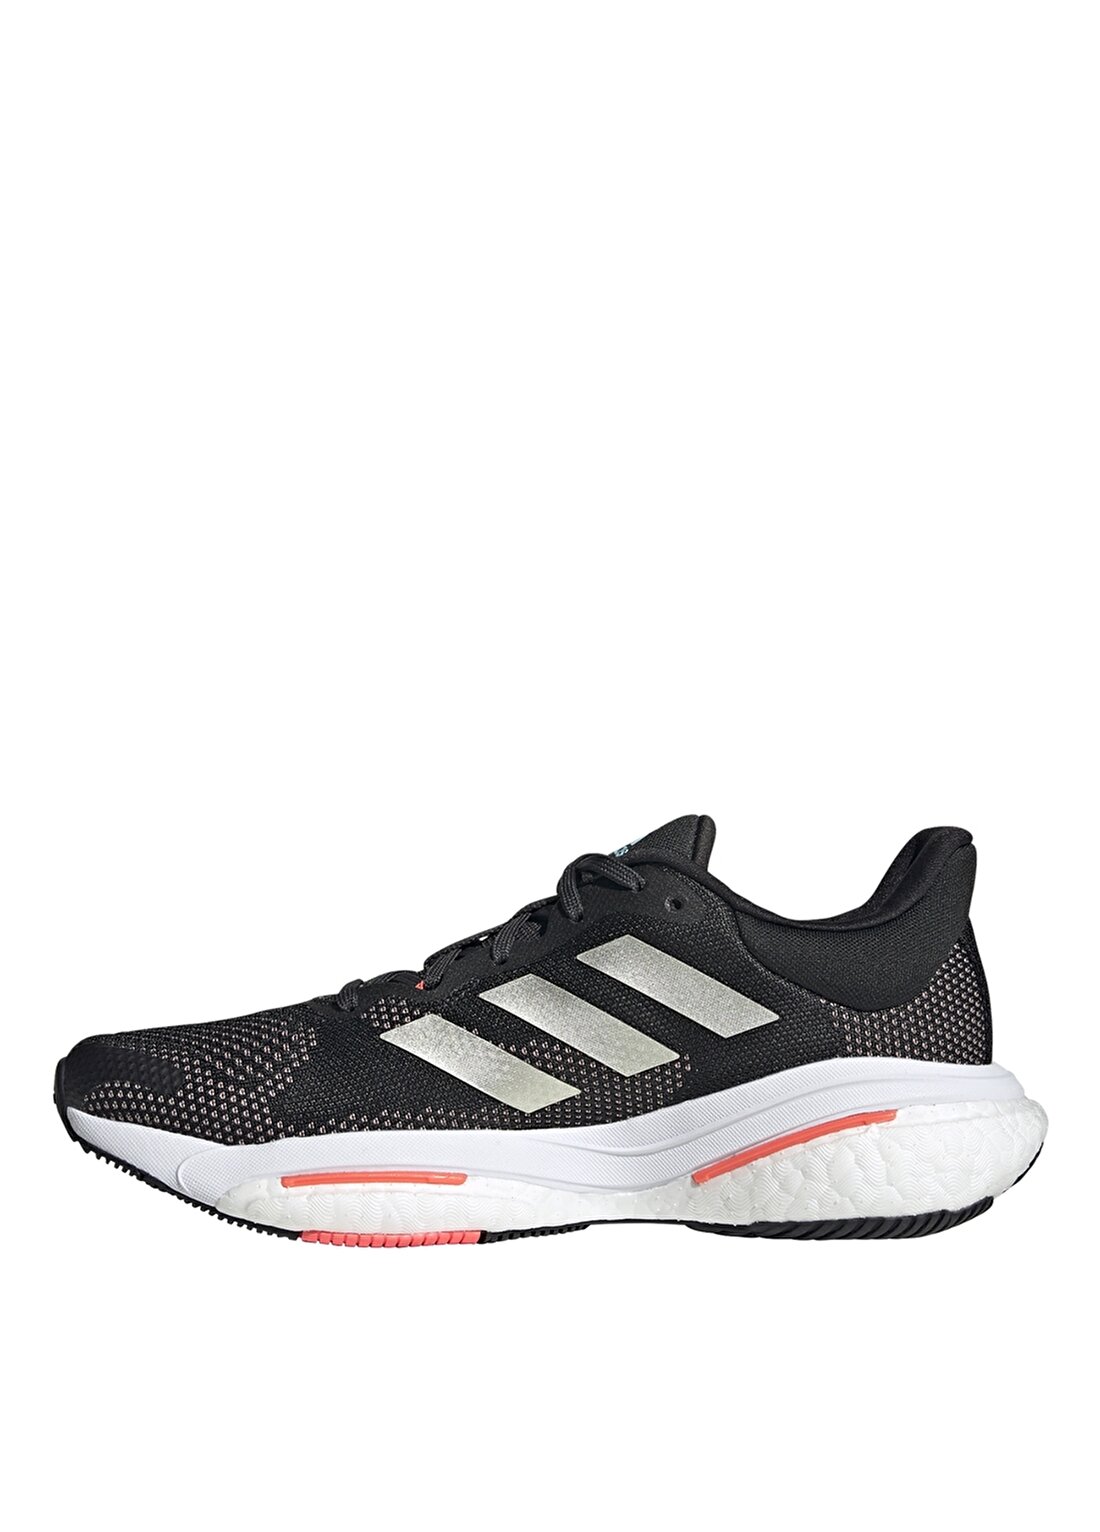 Adidas Siyah - Pembe Kadın Koşu Ayakkabısı H01163 SOLAR GLIDE 5 W